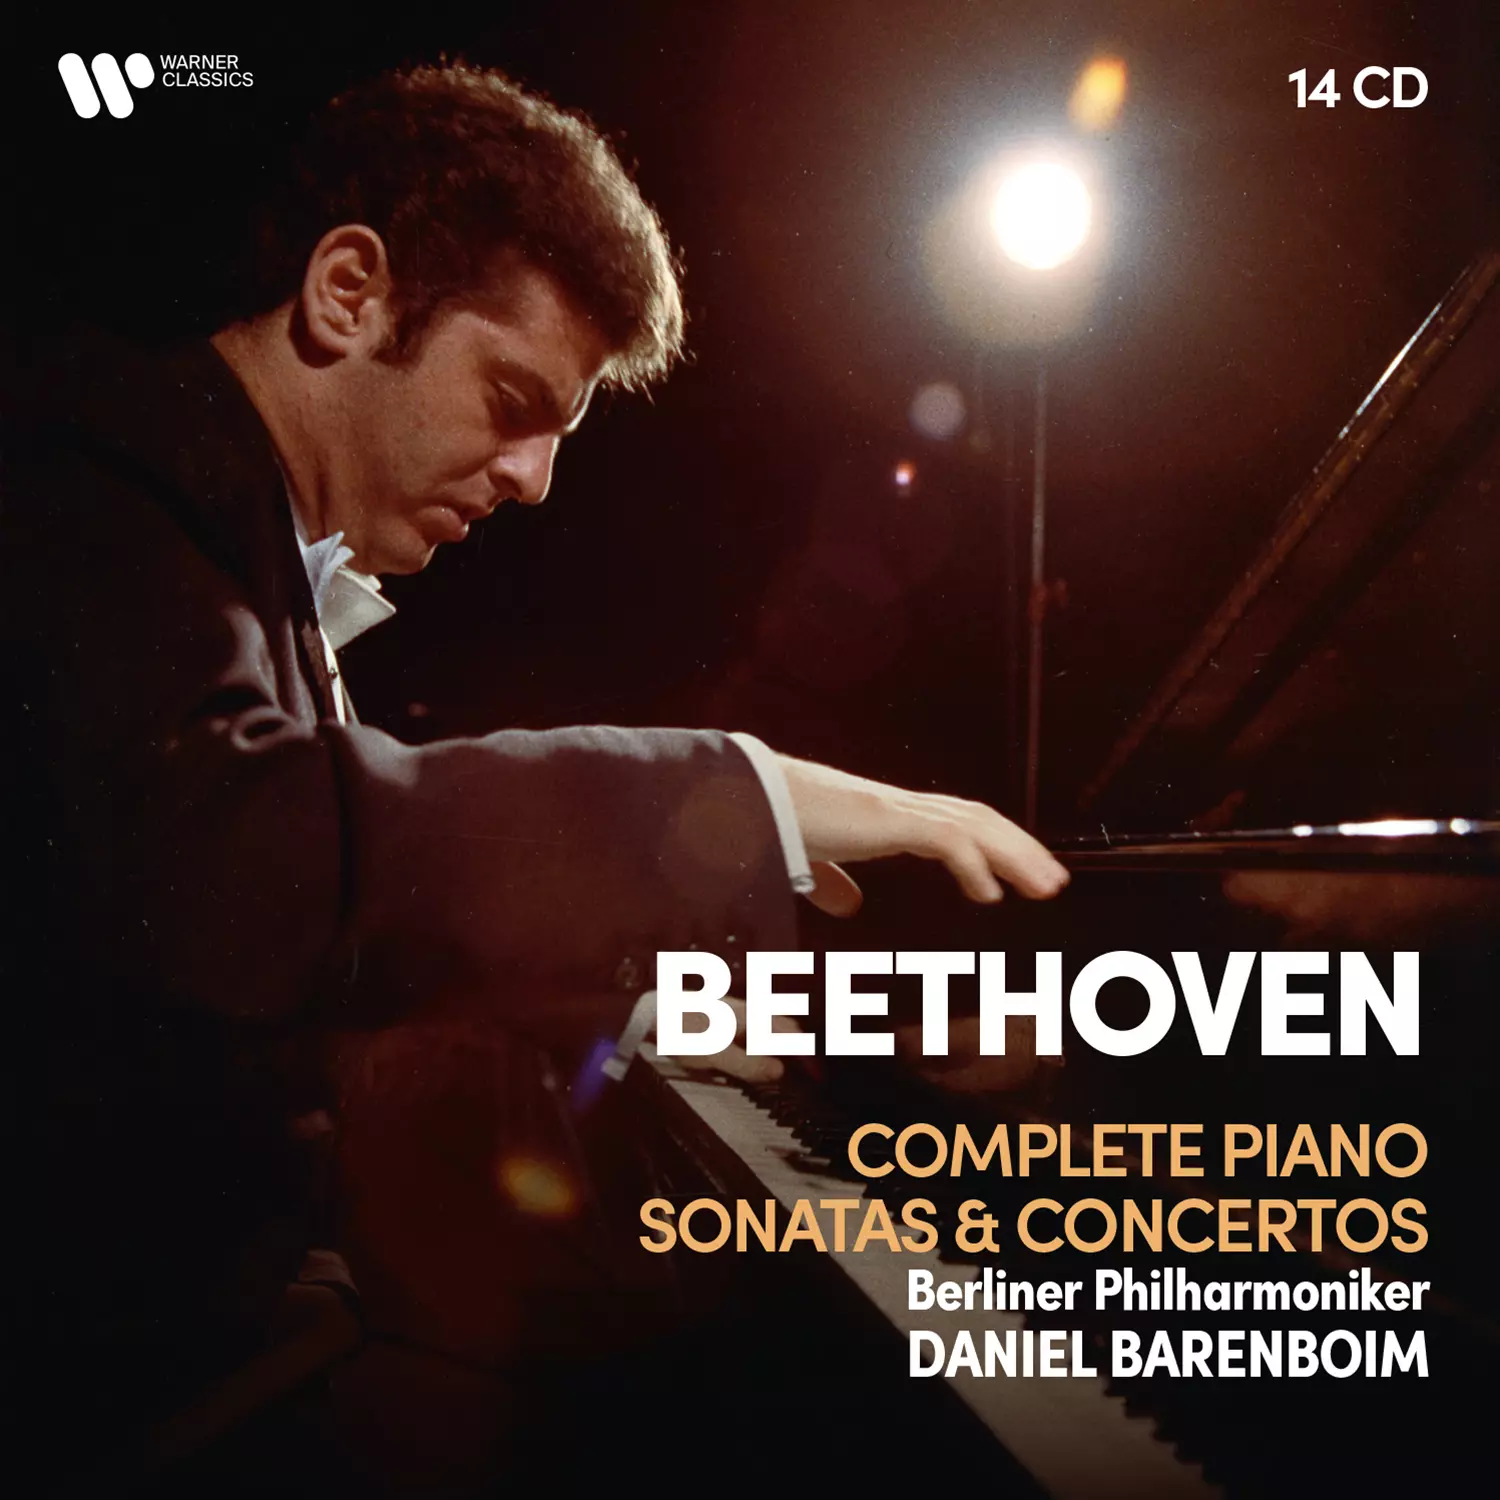 Beethoven Complete Piano Sonatas & Concertos, Diabelli Variations 